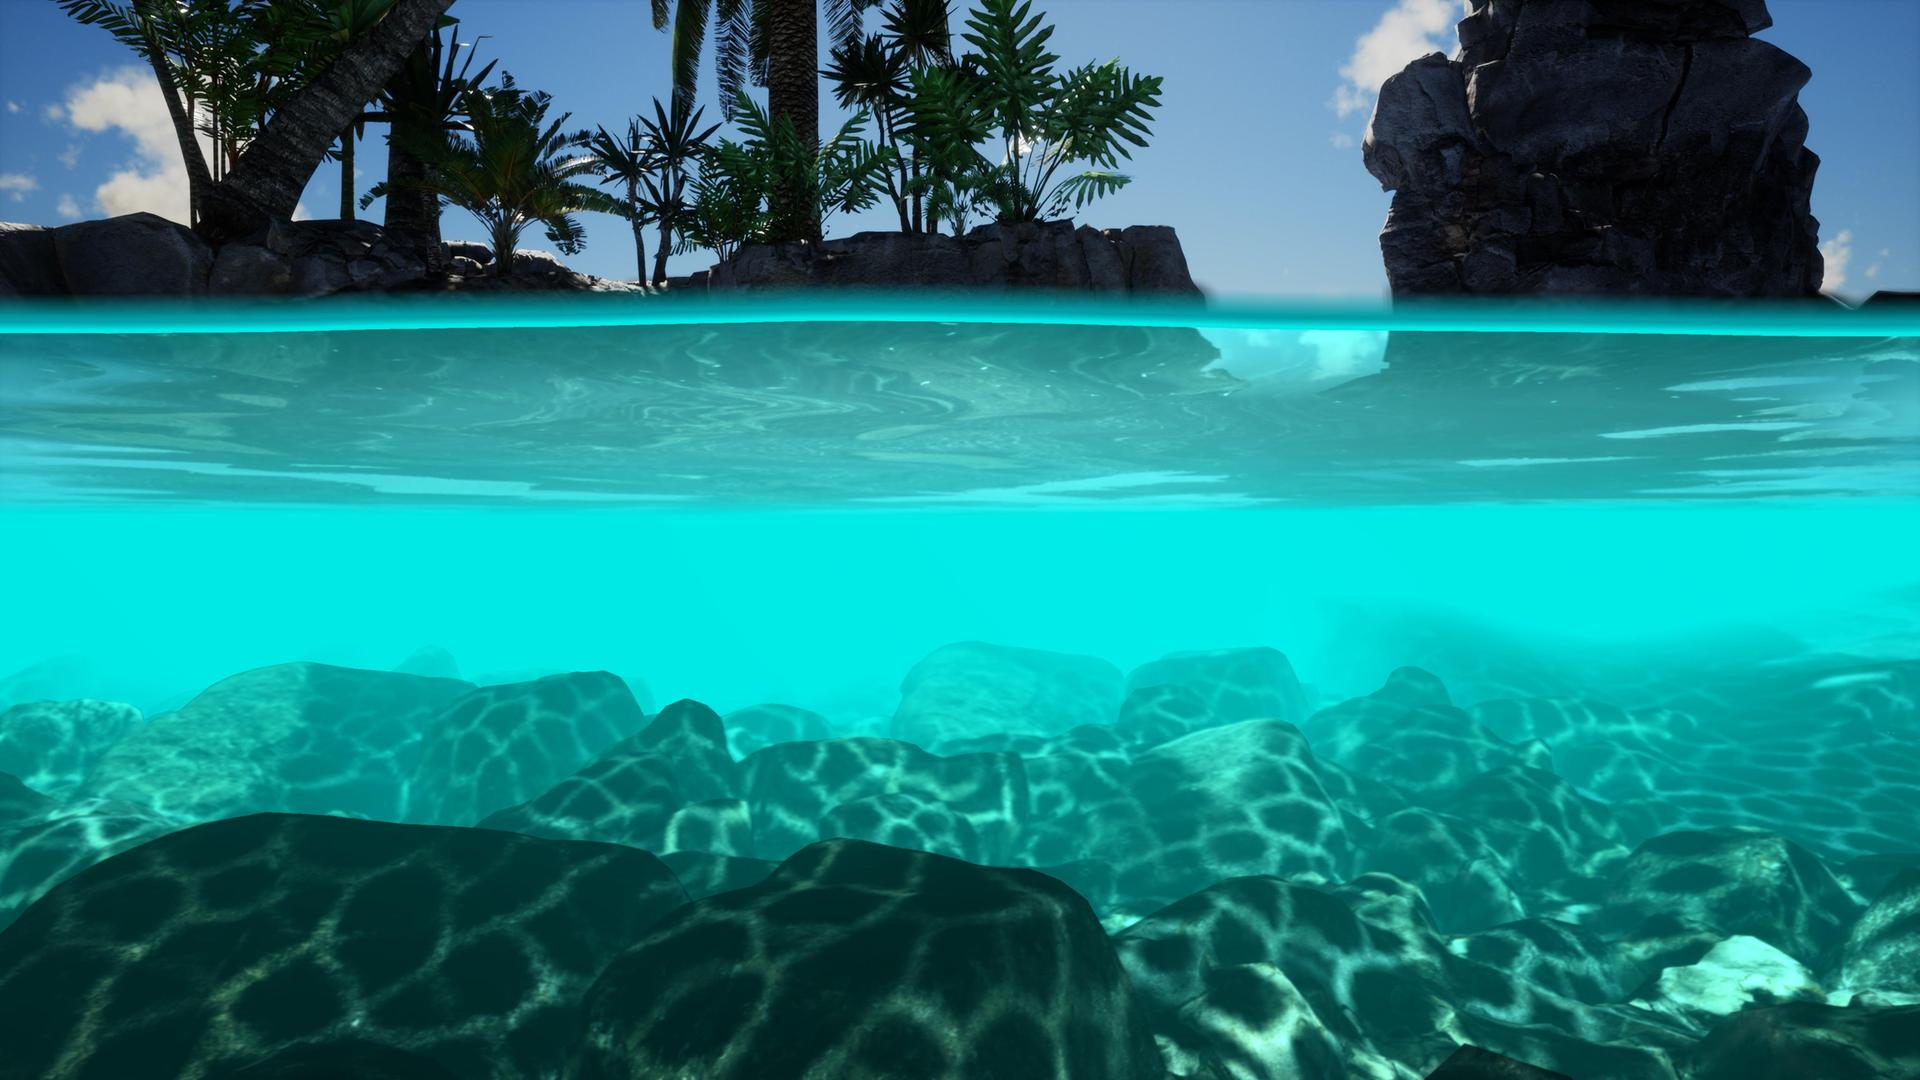 Halbe Unterwasseransicht von sonnenbeschienenen Felsen am Meeresgrund. Über dem Wasser ragen Palmen auf.